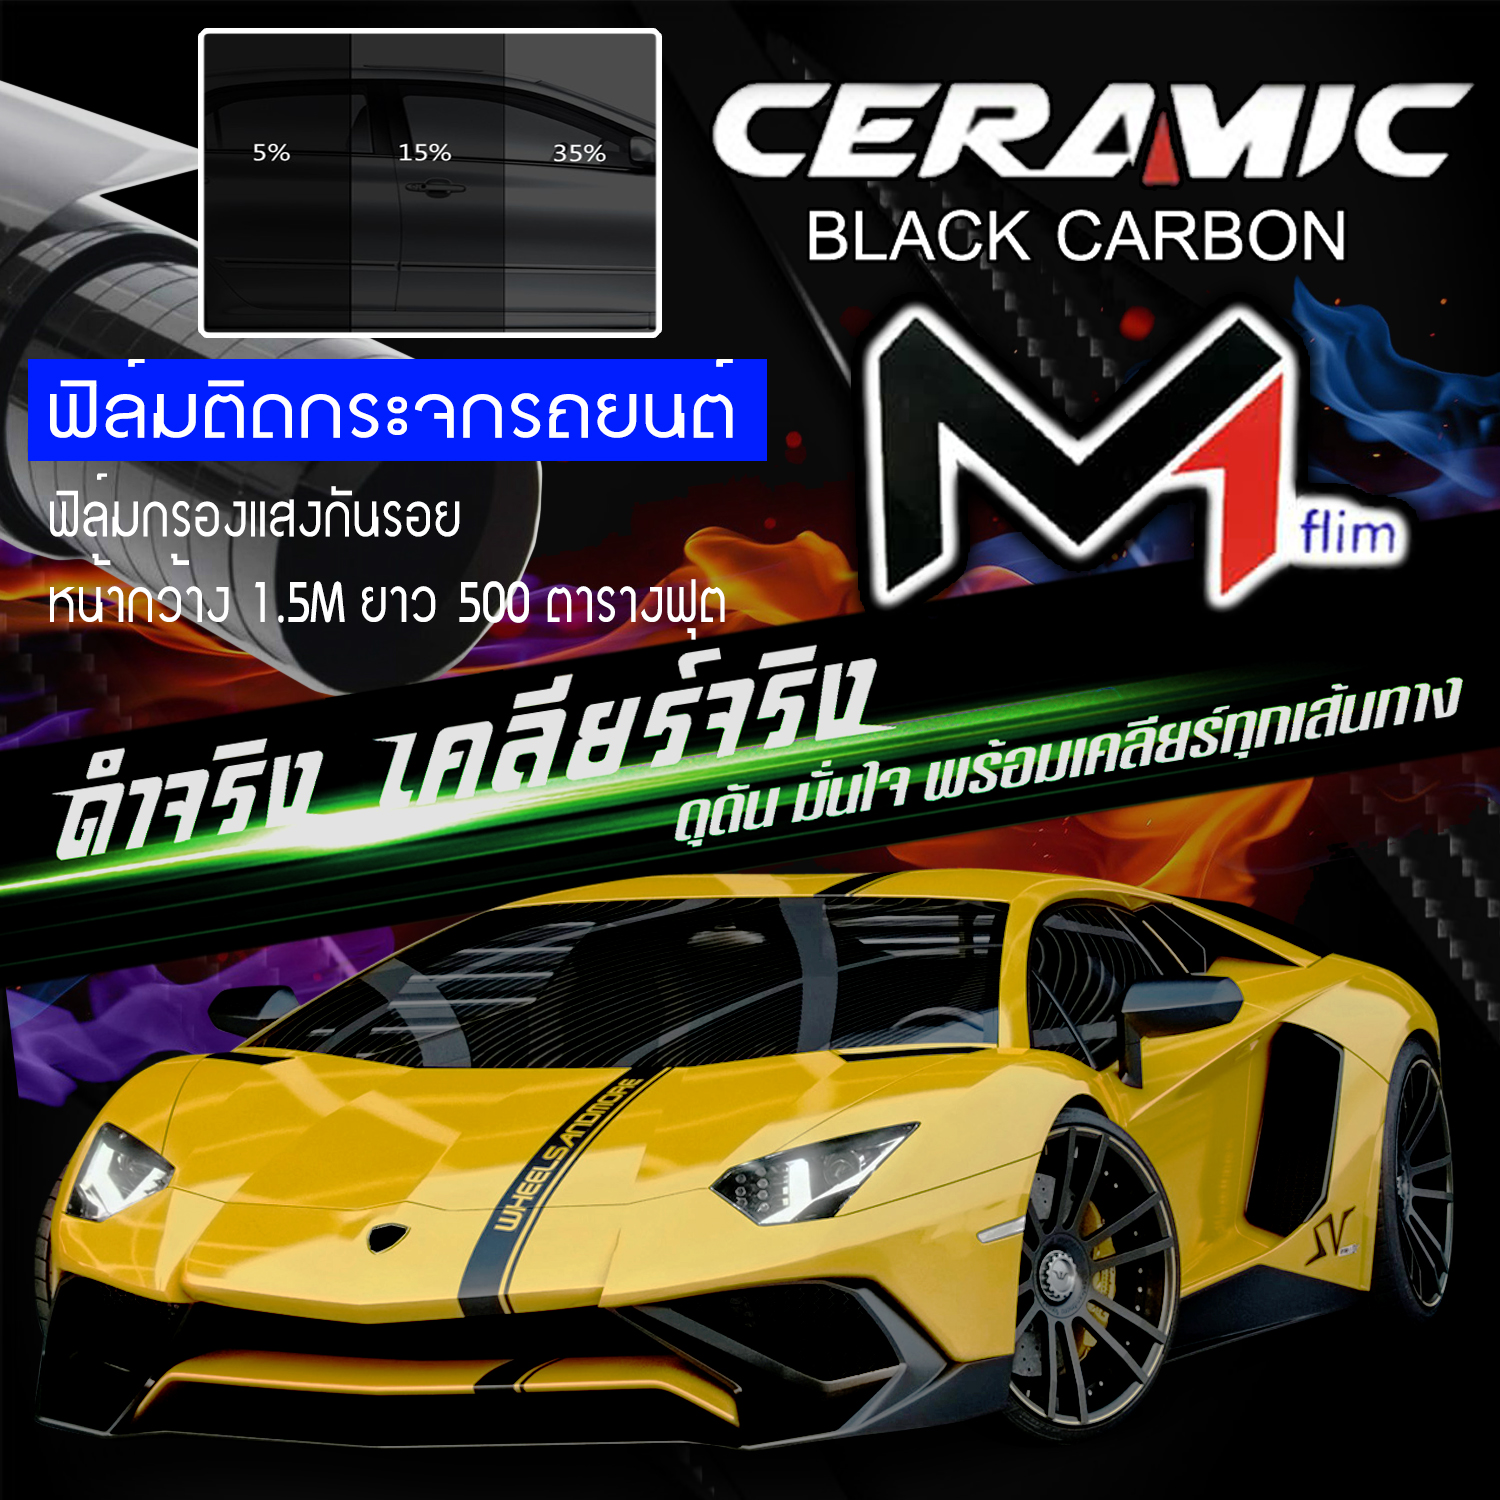 ฟิล์มกรองแสง ฟิล์มติดรถยนต์ ฟิล์มรถยนต์ ขนาด 500ตารางฟุต เฉลี่ยตารางฟุตละ 5บาท ด้านในมีให้เลือกหลายสี M1 FLIM Black Carbon